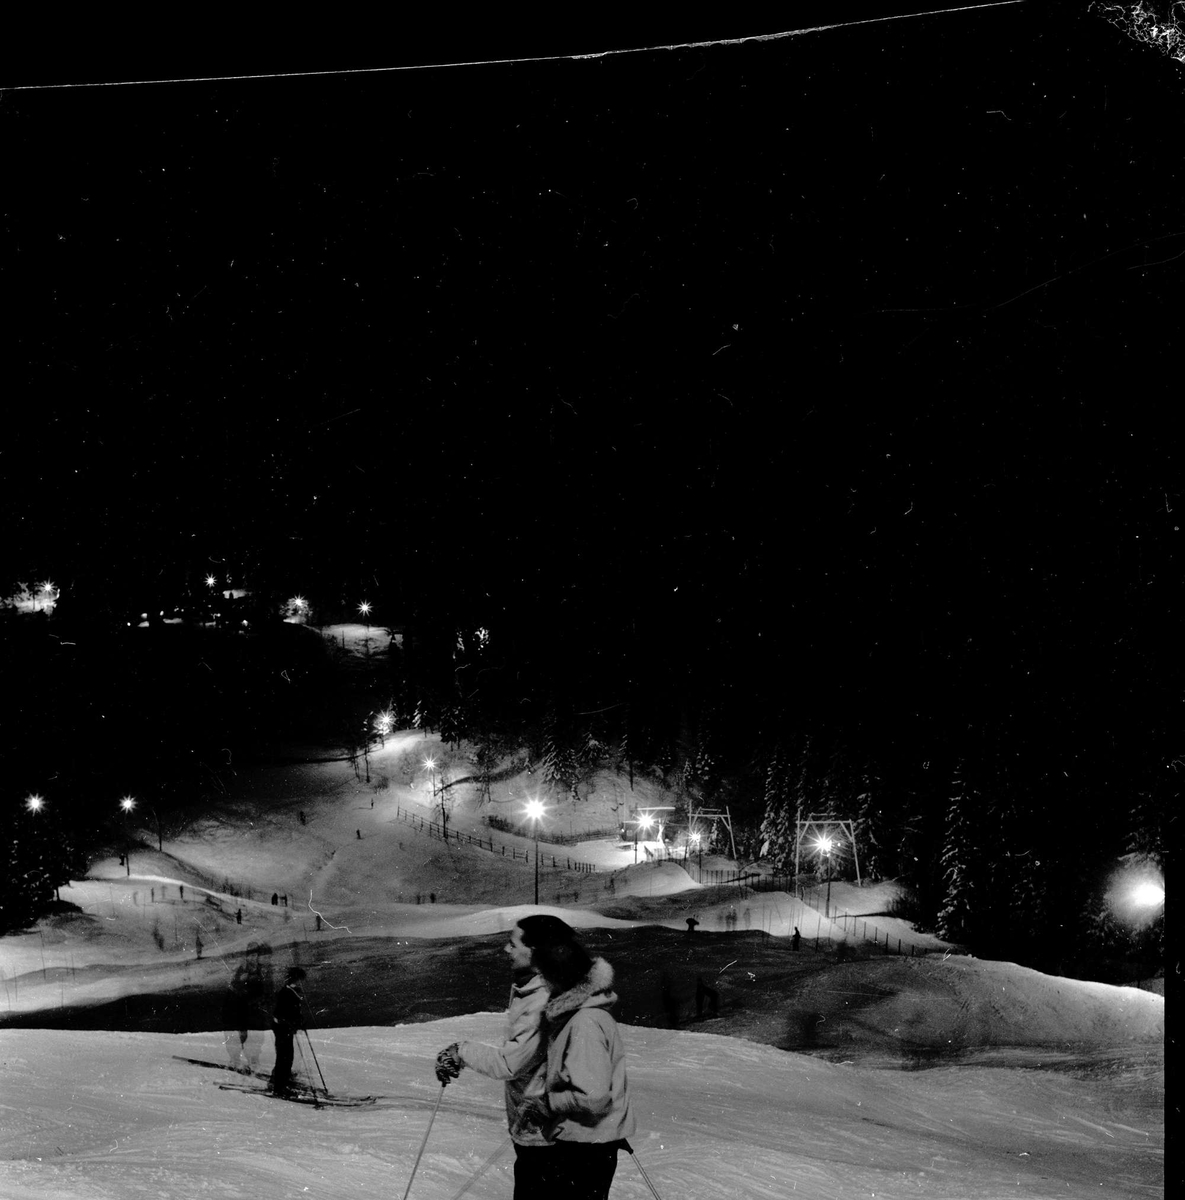 Nordmarka, Oslo, 12.02.1955. Lysløypa. Skiløpere i skogen.